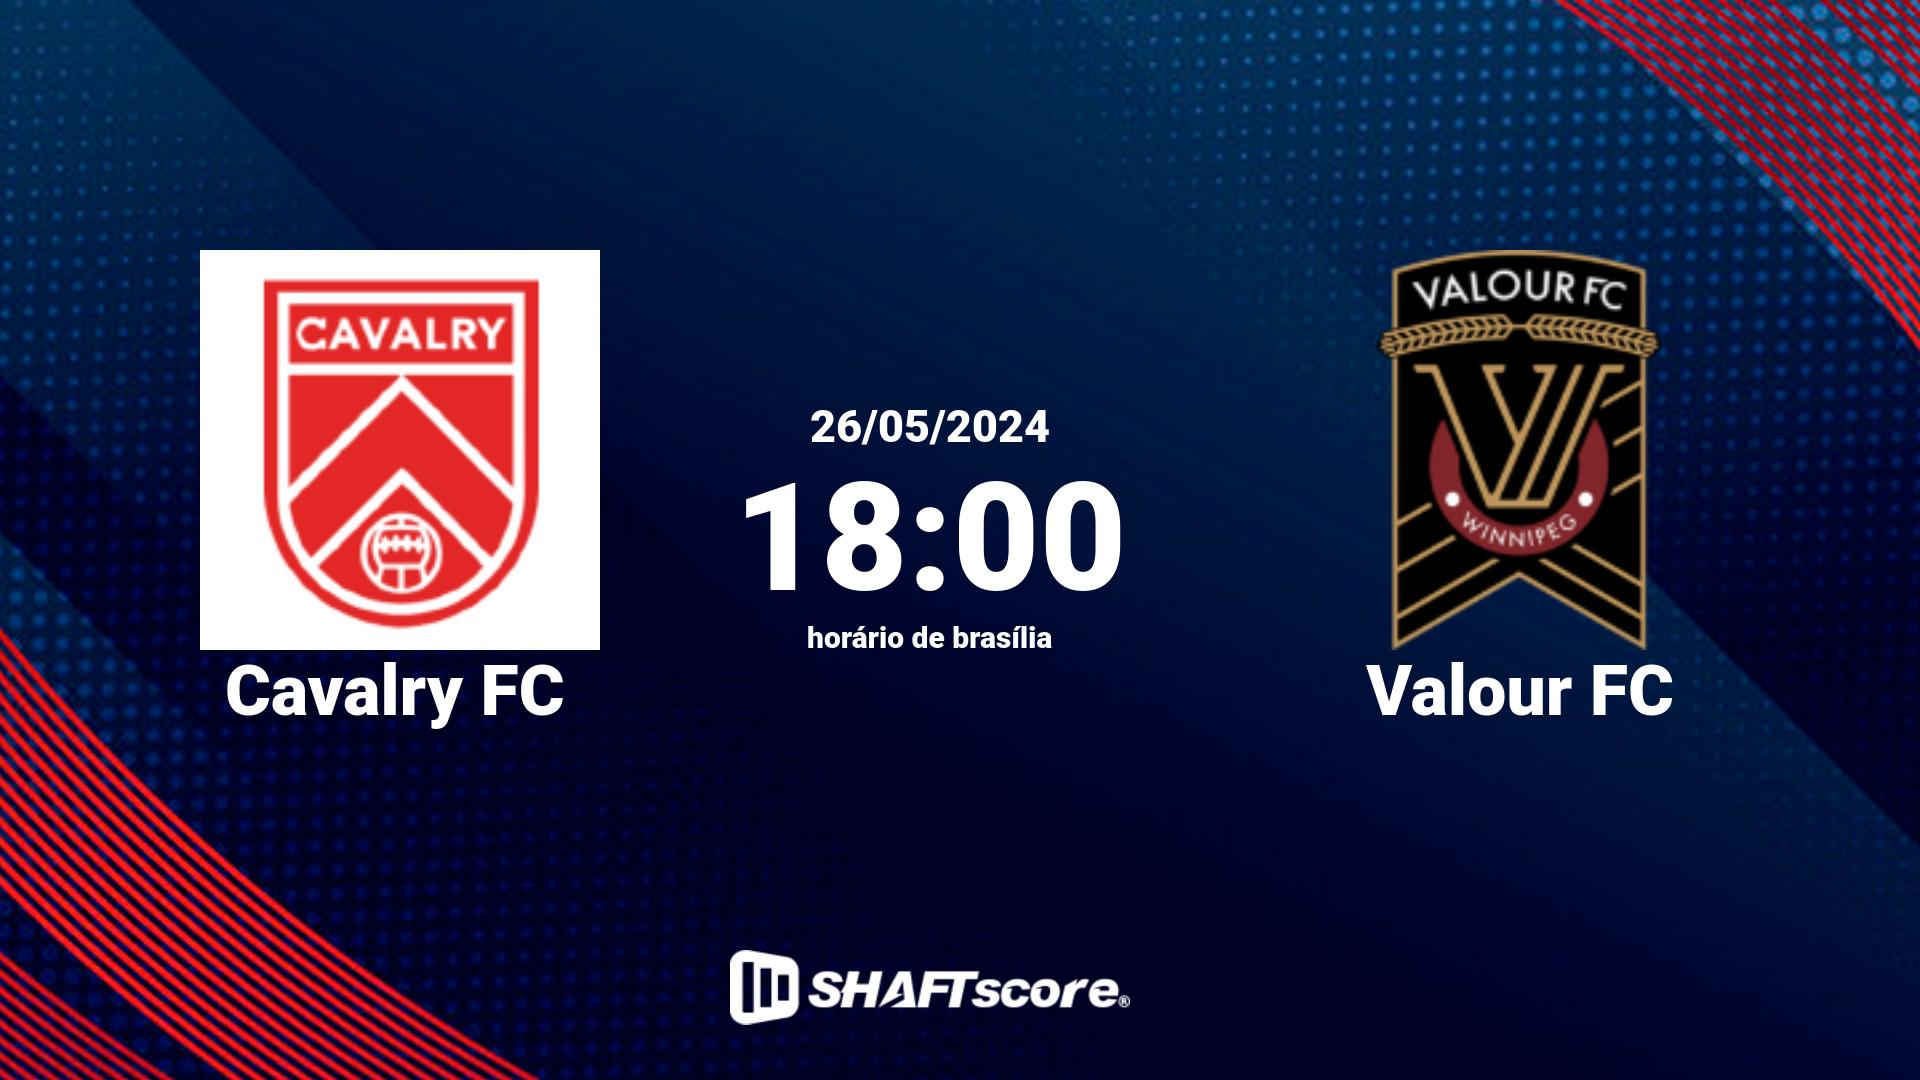 Estatísticas do jogo Cavalry FC vs Valour FC 26.05 18:00